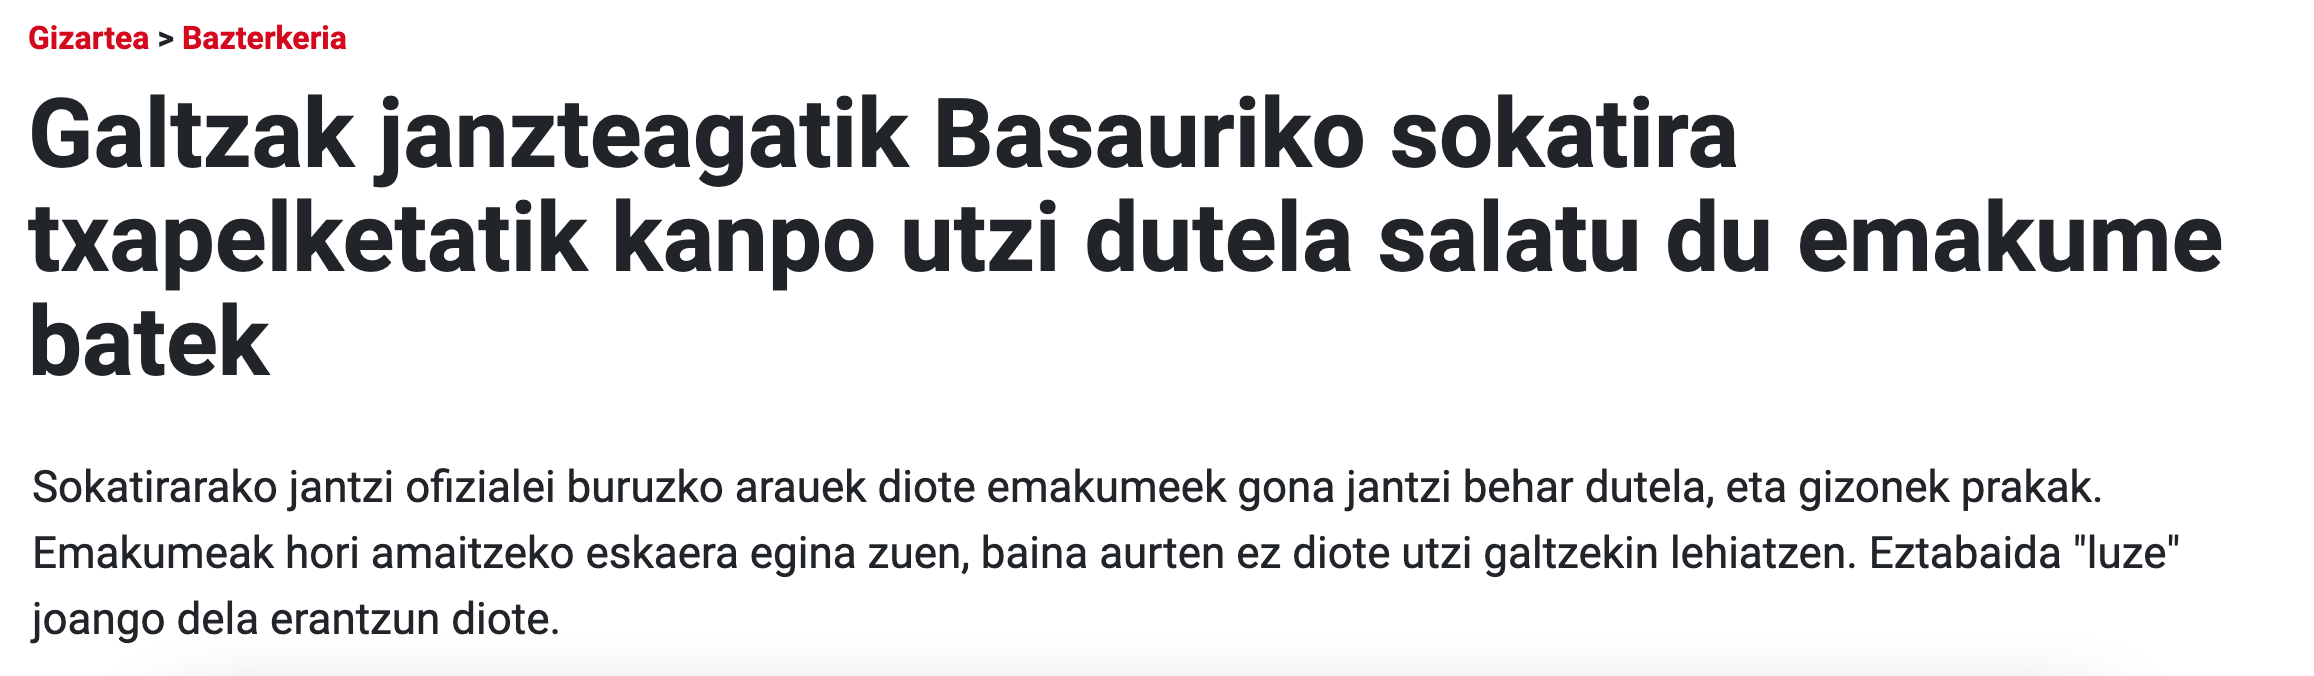 ARGIA: Galtzak janzteagatik Basauriko sokatira txapelketatik kanpo utzi dutela salatu du emakume batek